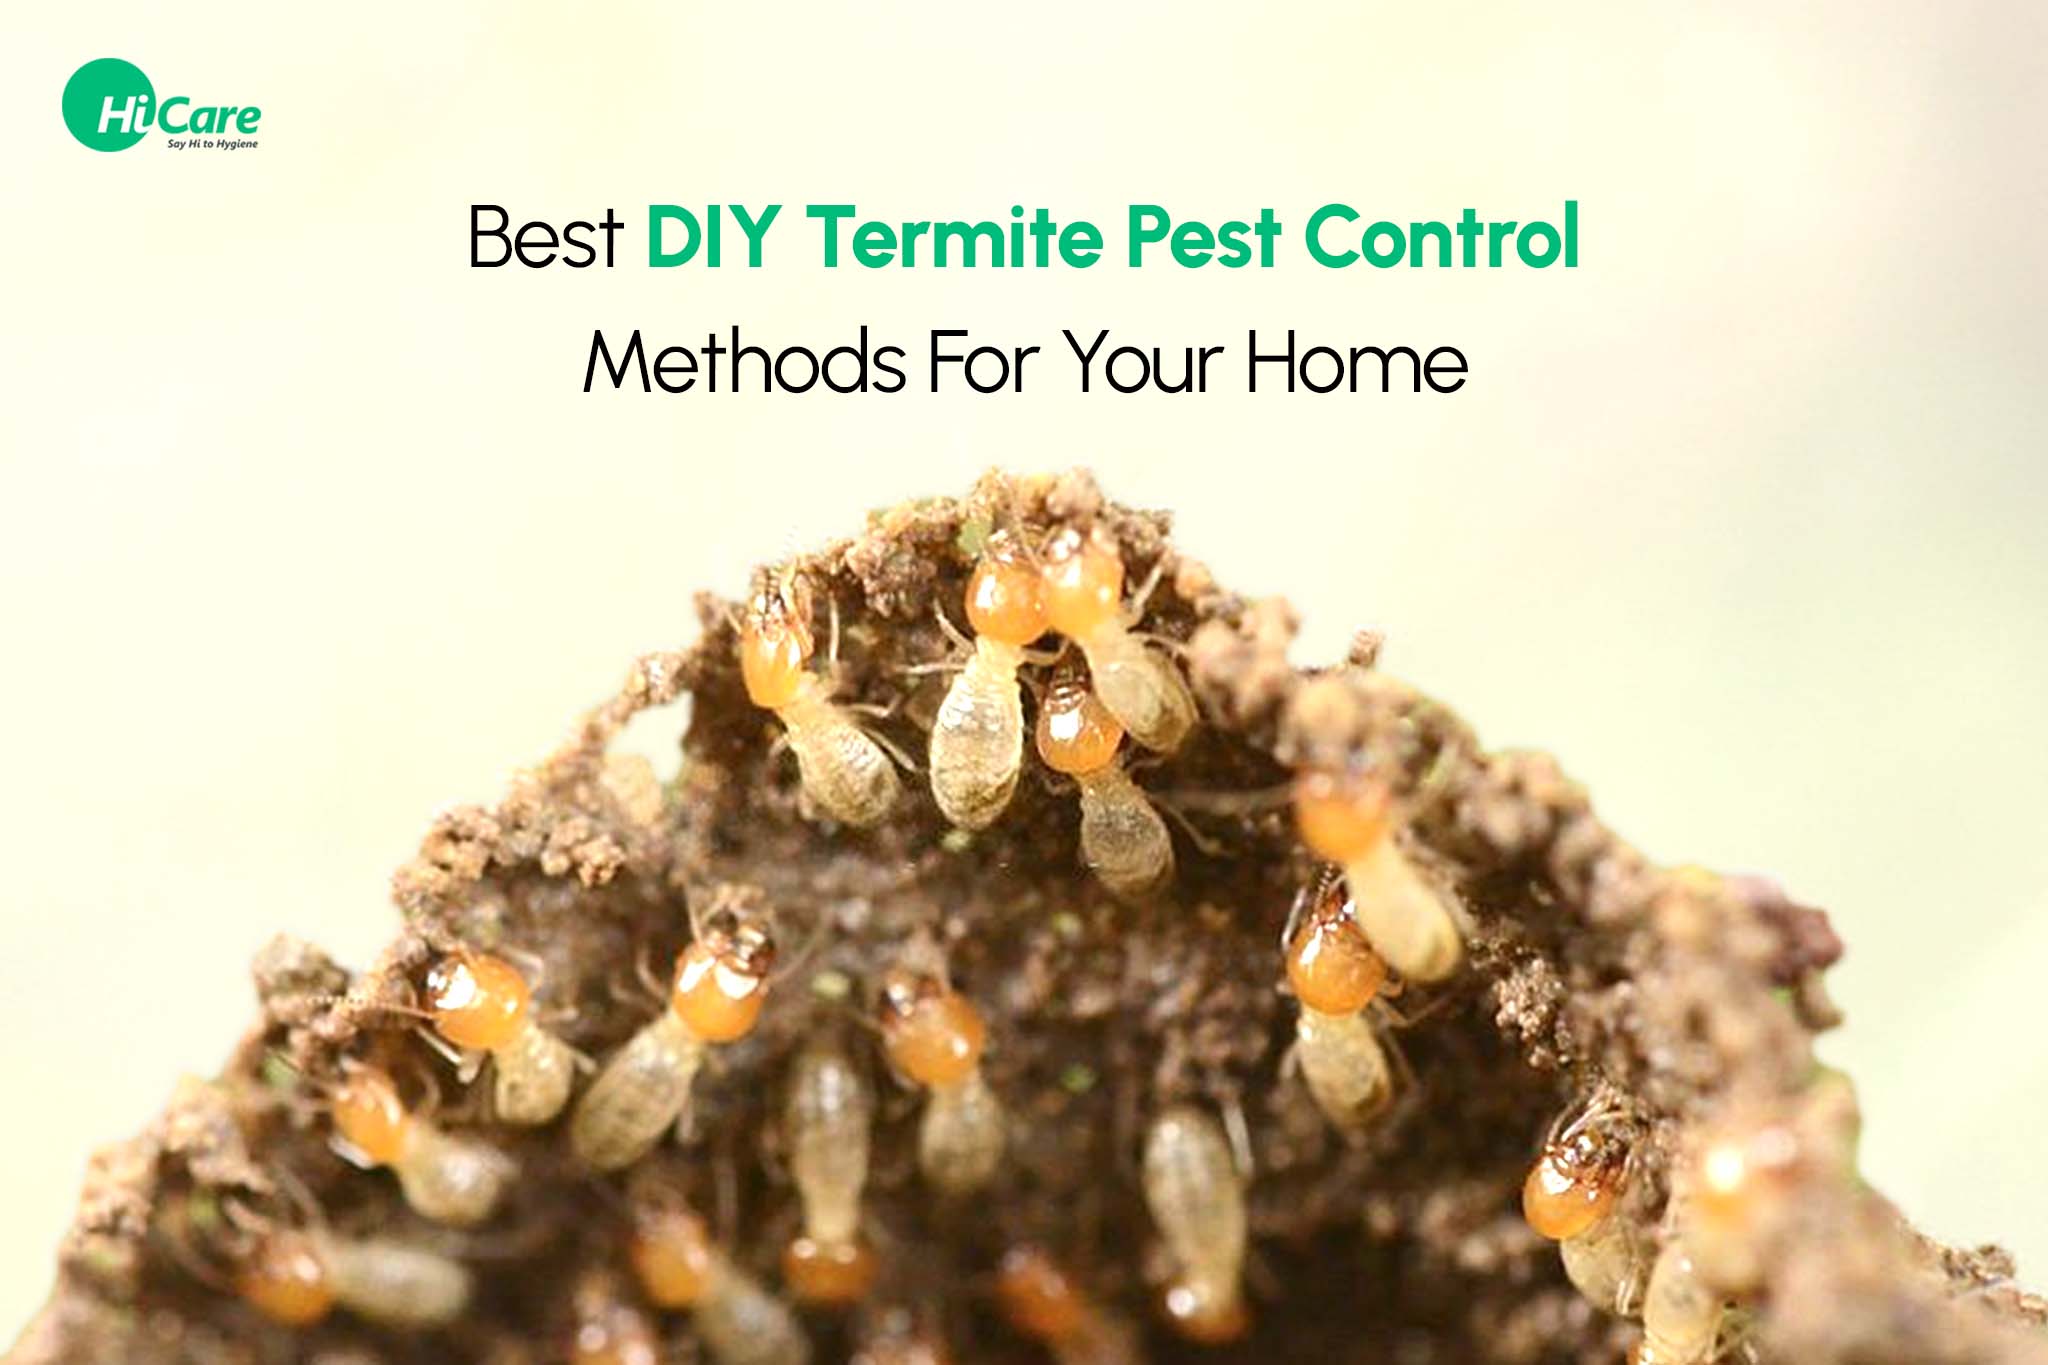 diy termite pest control